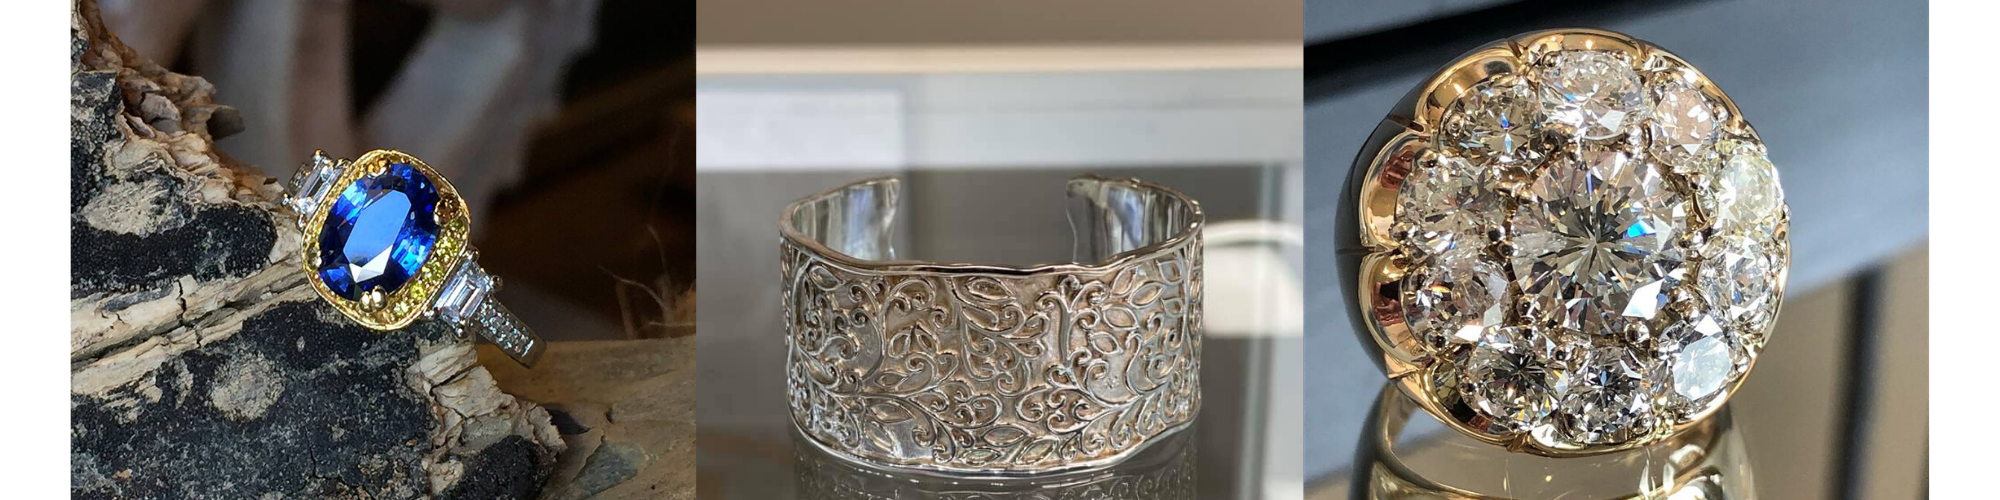 custom jewelry pieces 